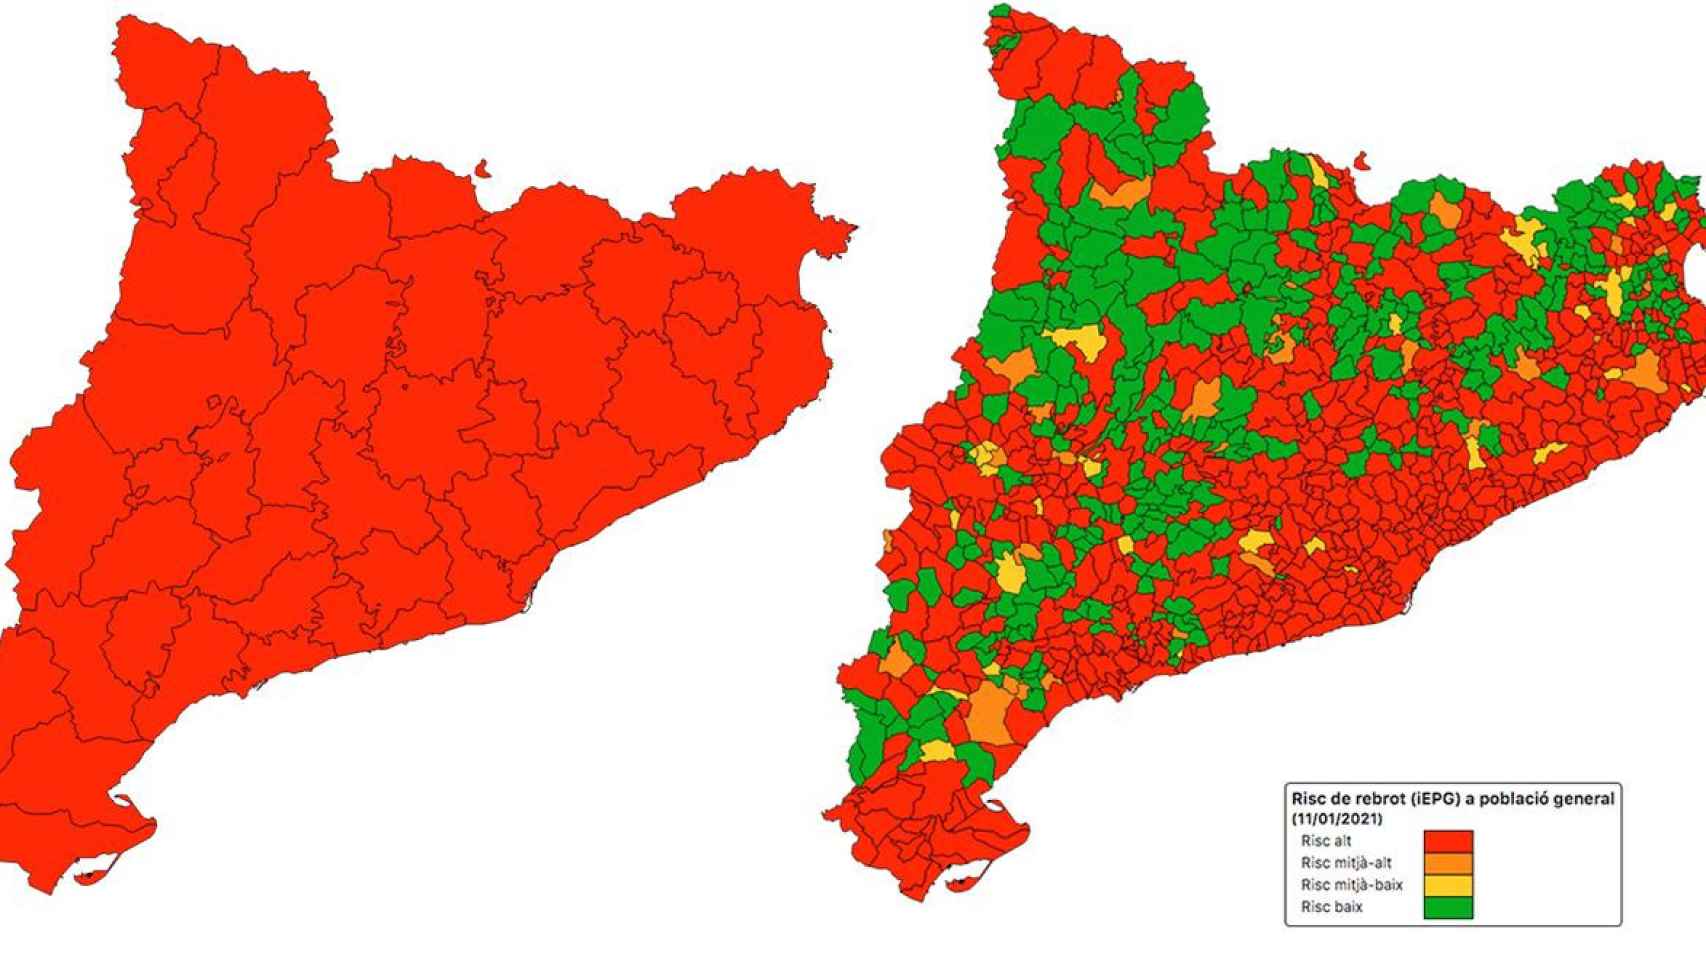 El riesgo de rebrote en Cataluña el 11 enero / DADESCOVID